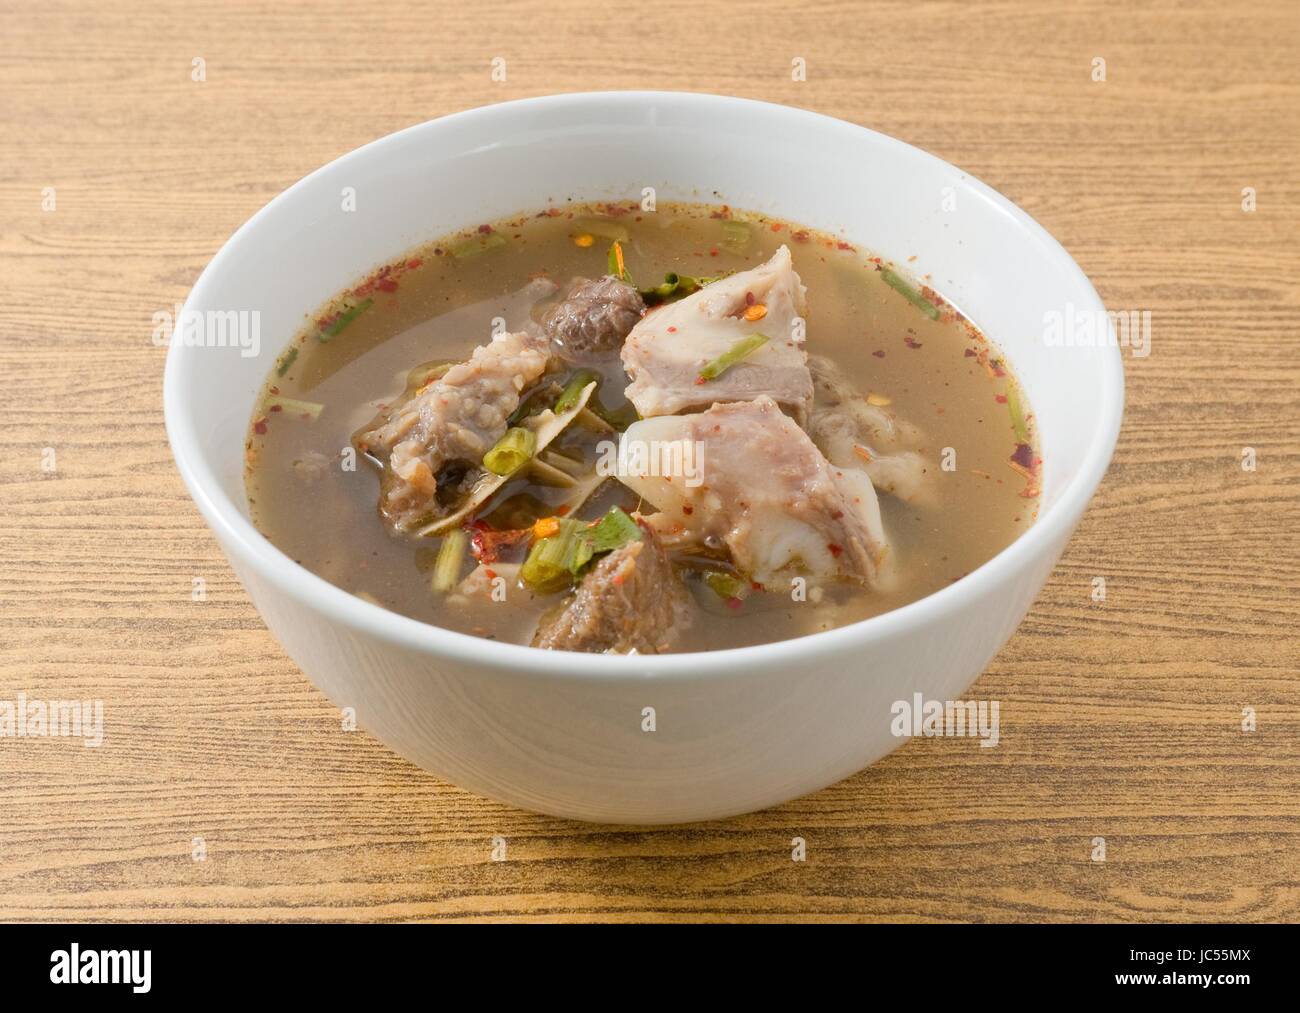 Cucina thailandese e cibo delizioso chiaro thai piccante e aspro zuppa con le interiora dei bovini in una ciotola. Foto Stock